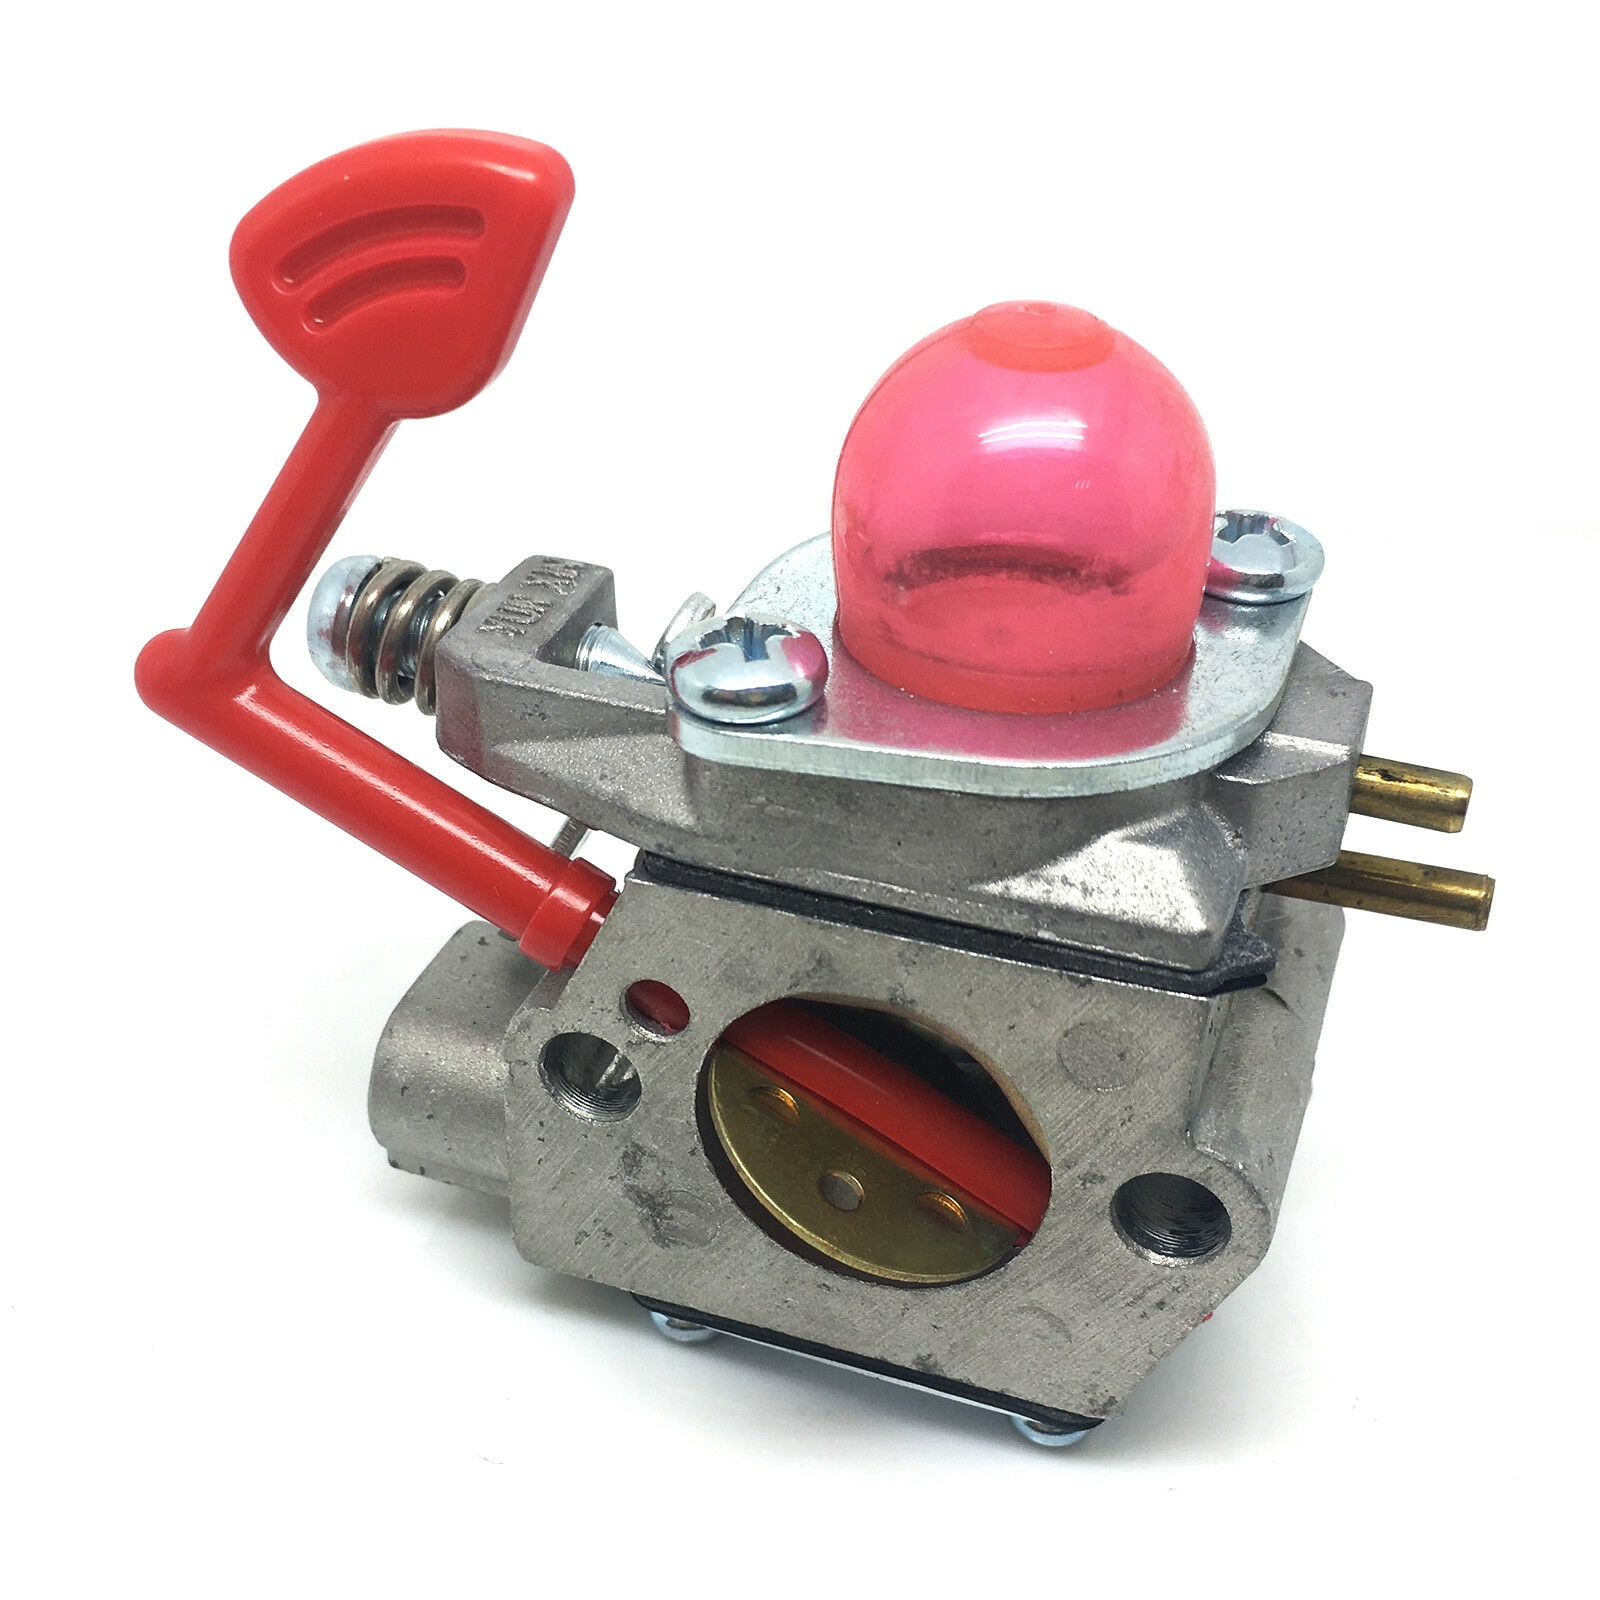 Details about   Carburetor Gasket for Craftsman 358.794740 358.794741 358.794744 